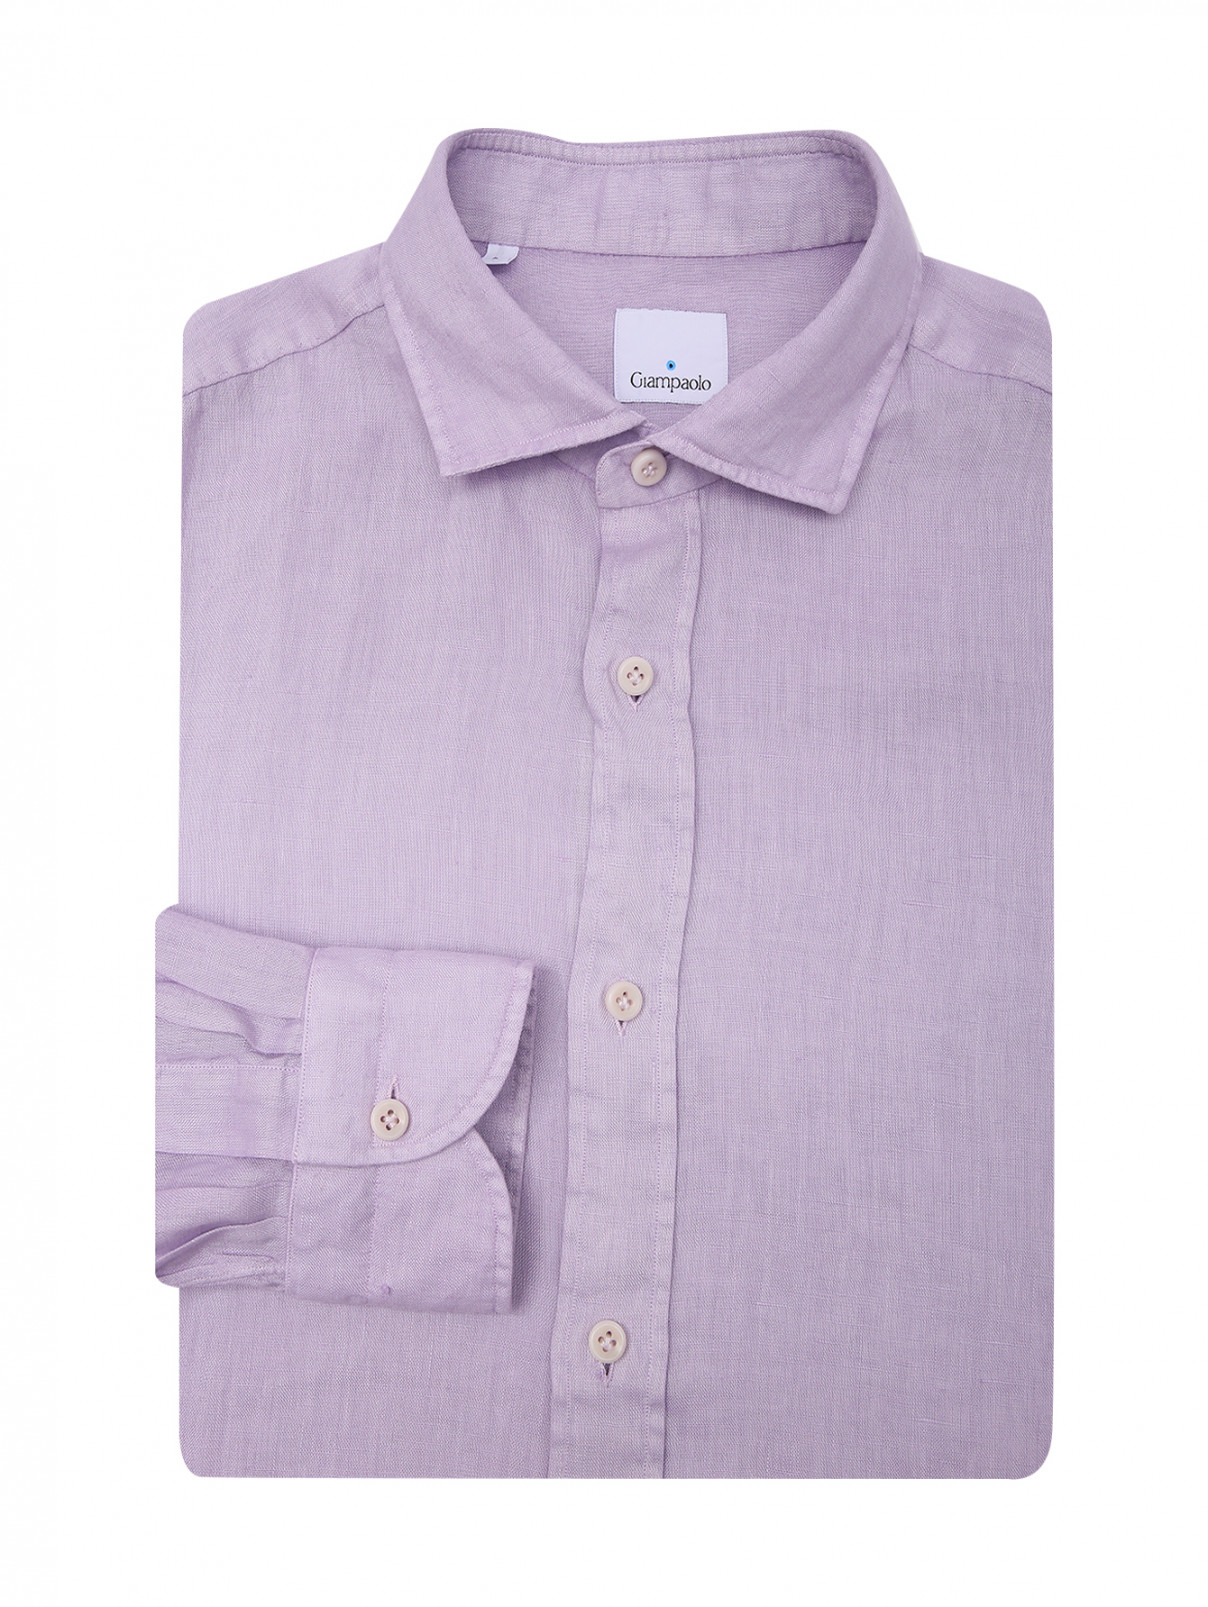 Рубашка из льна на пуговицах Giampaolo  –  Общий вид  – Цвет:  Фиолетовый